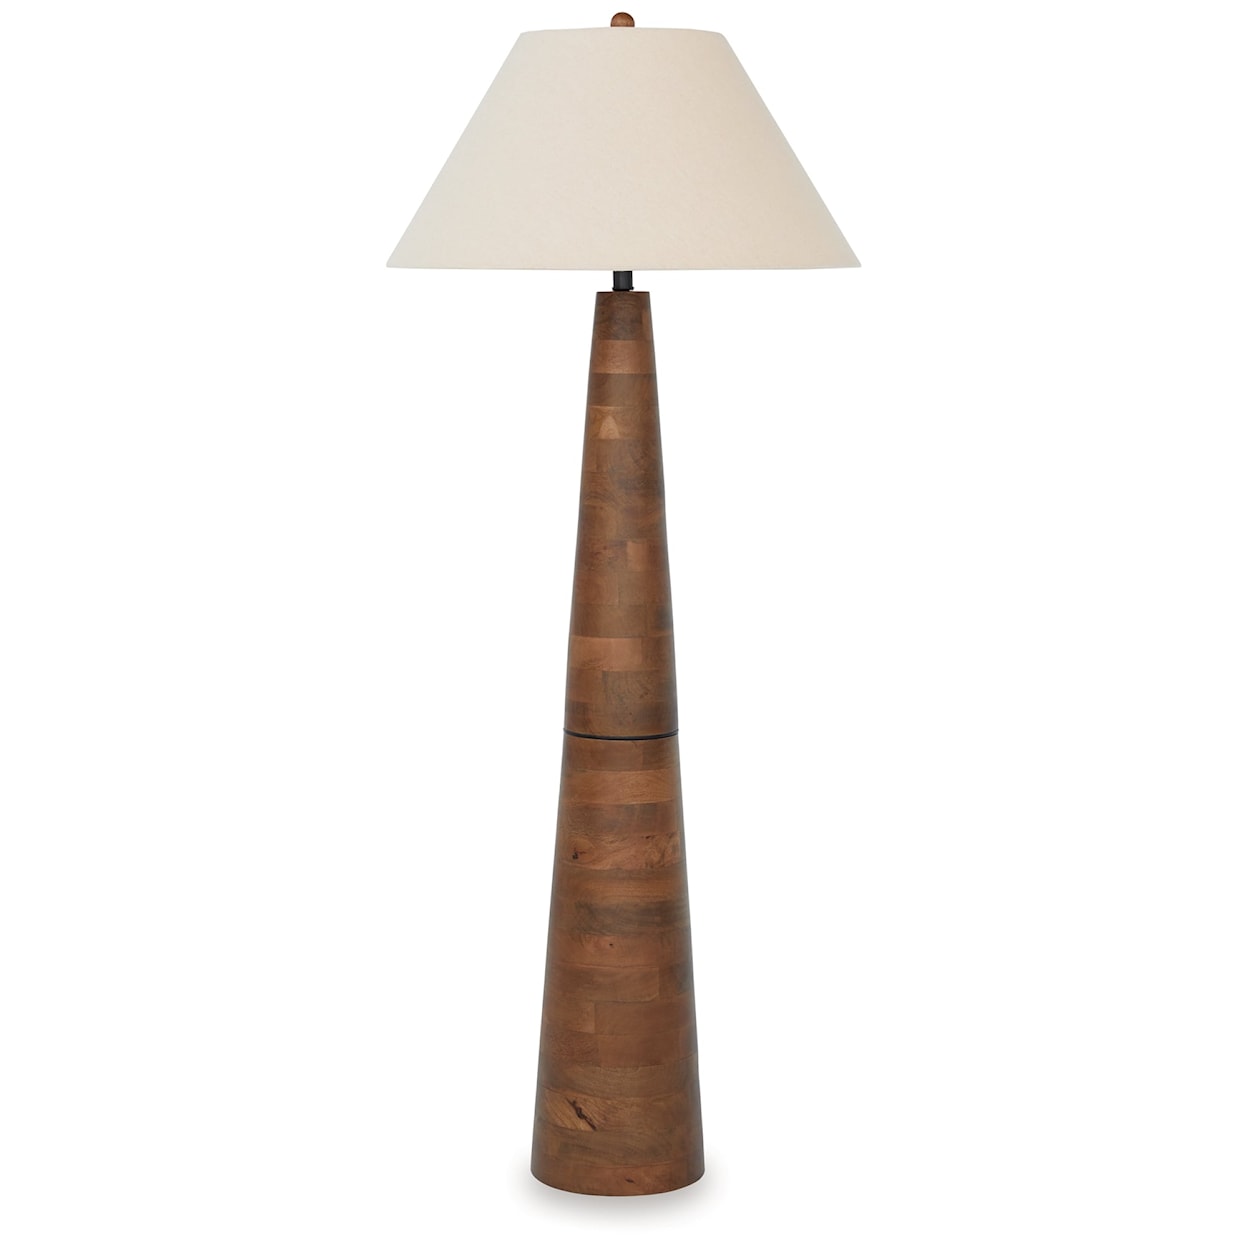 Ashley Furniture Signature Design Danset Wood Floor Lamp